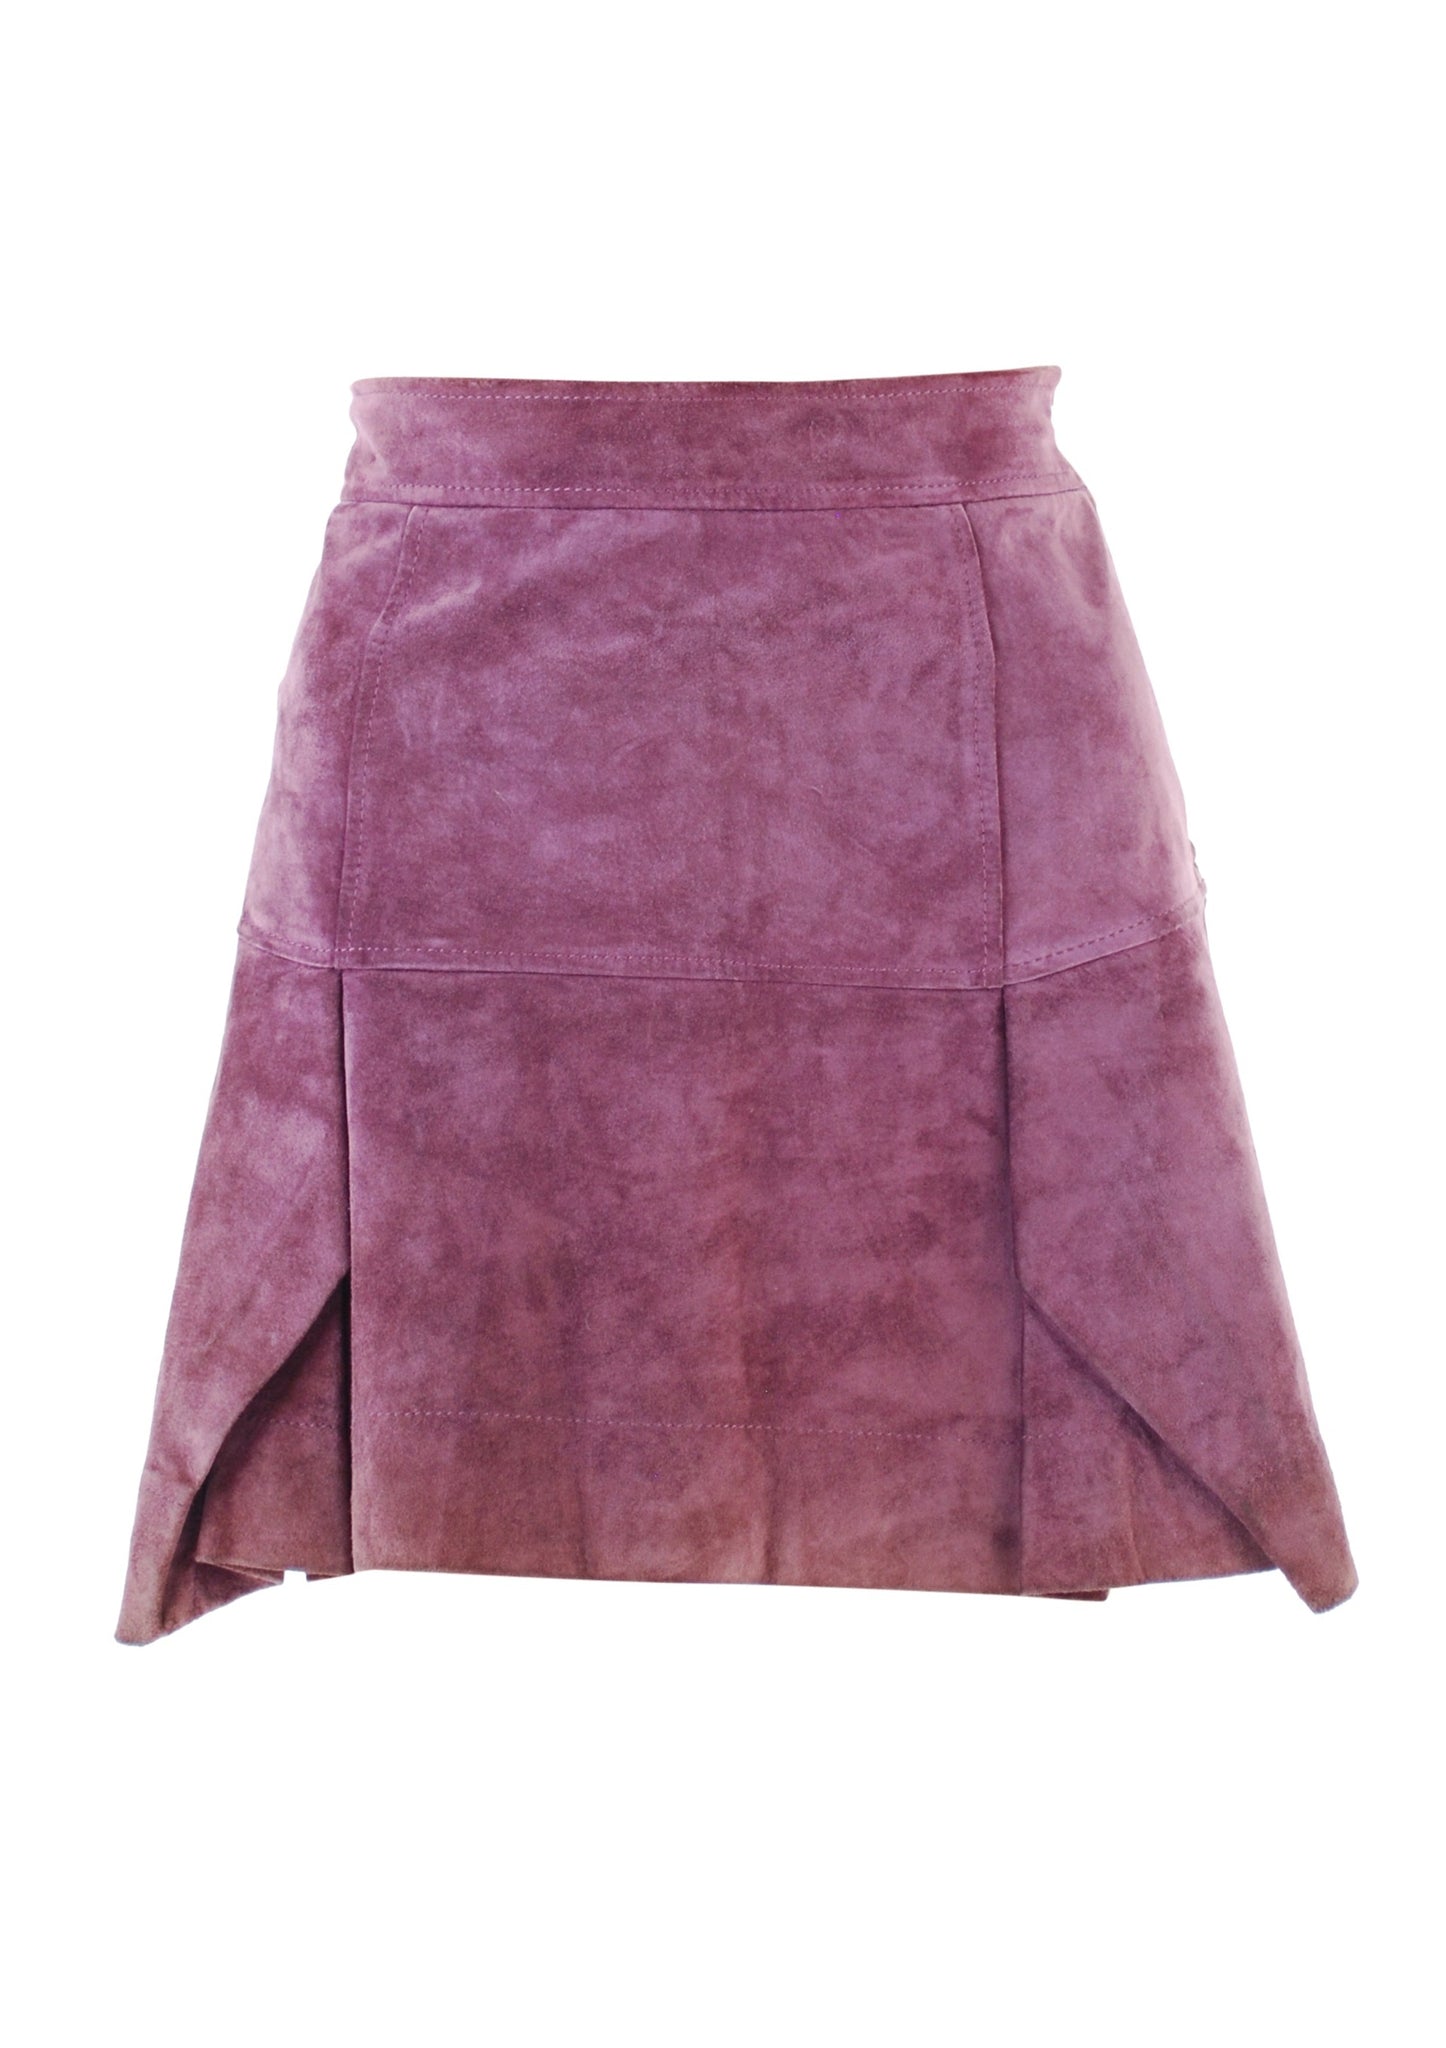 Vivienne Westwood Mini Skirt